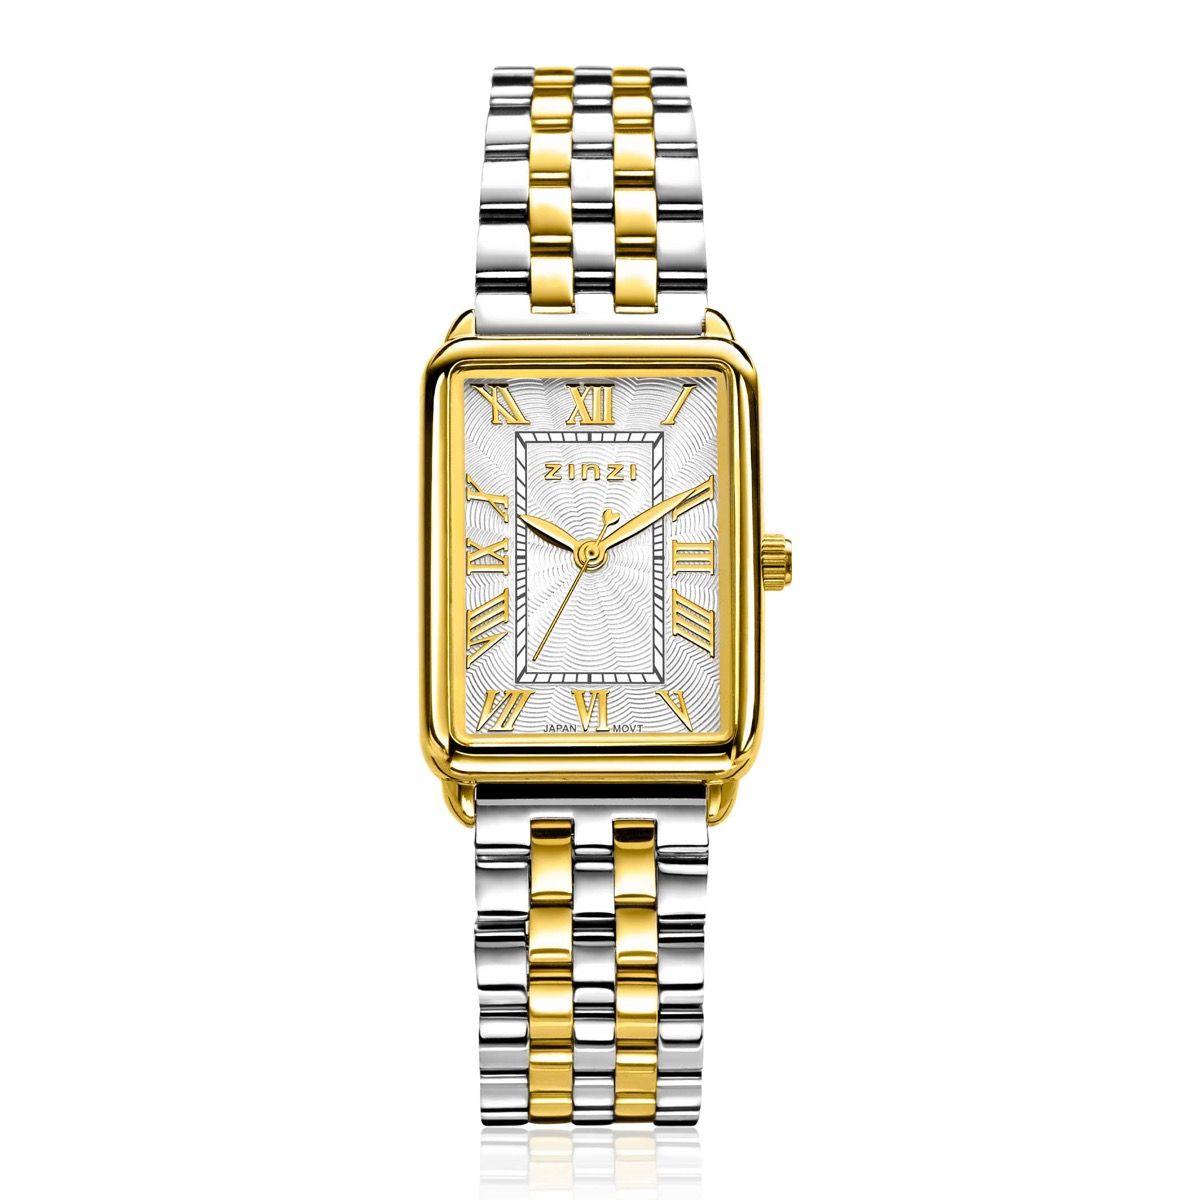 Zinzi Elegance horloge ZIW1907 + gratis armband t.w.v. 29,95, exclusief en kwalitatief hoogwaardig. Ontdek nu!